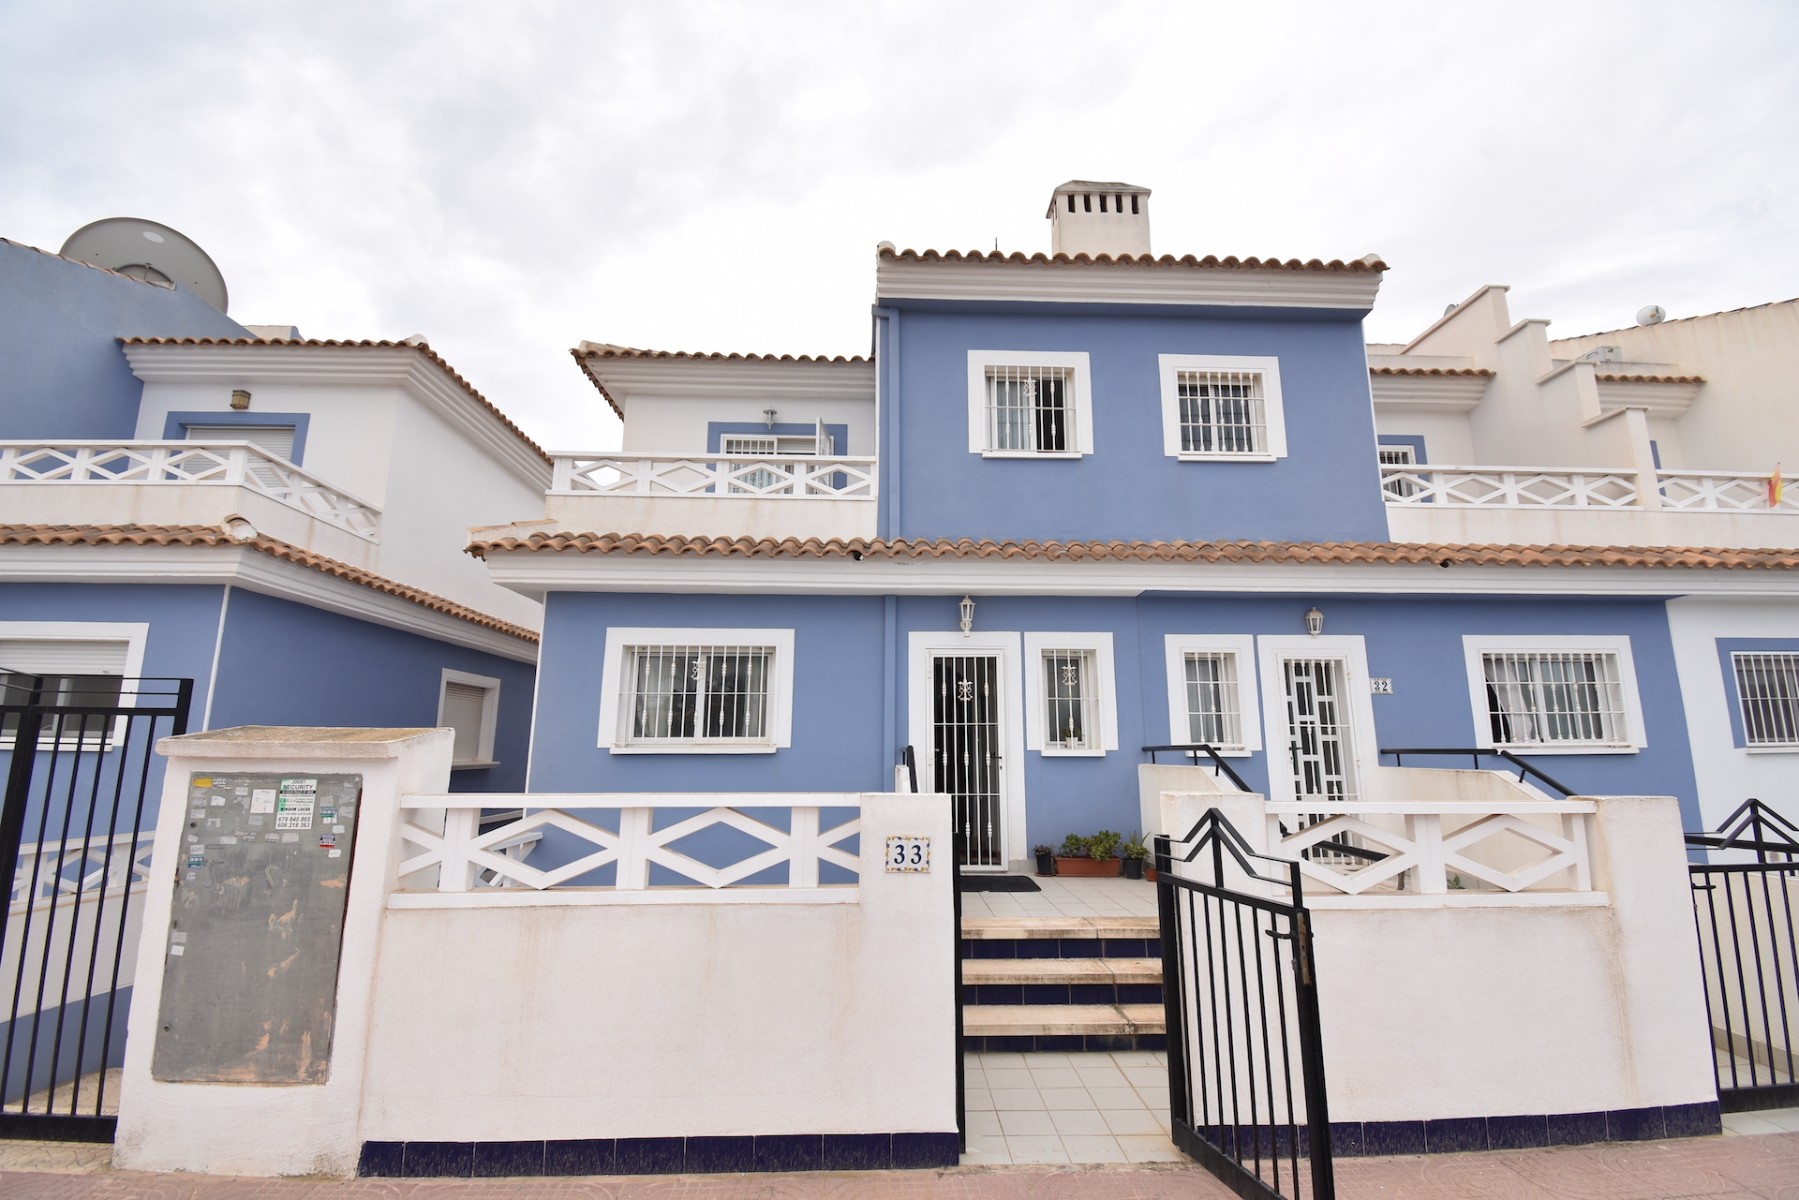 3 bedroom house / villa for sale in Ciudad Quesada, Costa Blanca